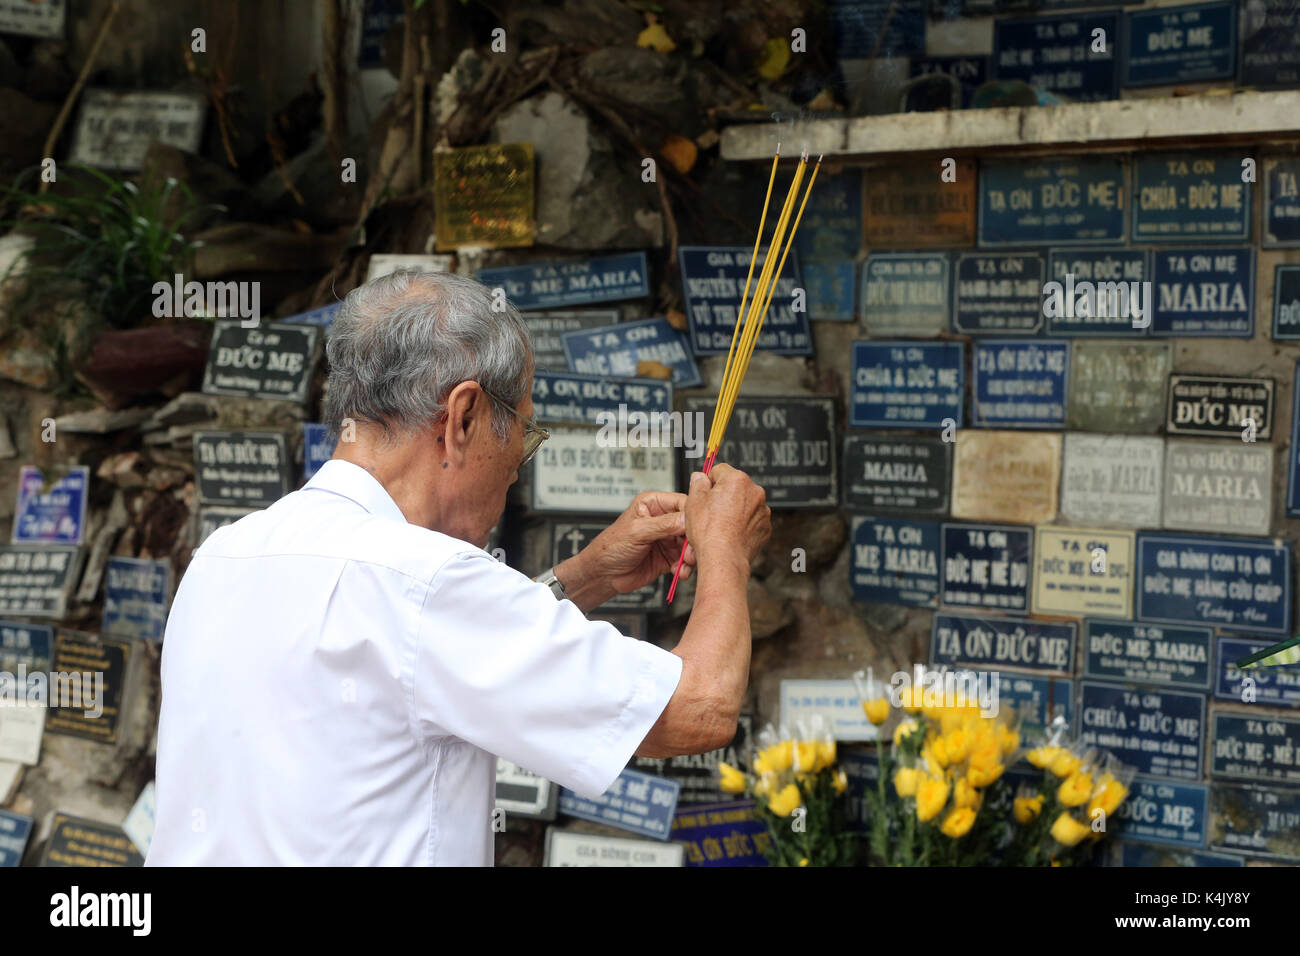 Homme priant en copie de la grotte de Massabielle, église Saint-Philippe (église Huyen Sy), Ho Chi Minh ville, Vietnam, Indochine, Asie du Sud-est, Asie Banque D'Images